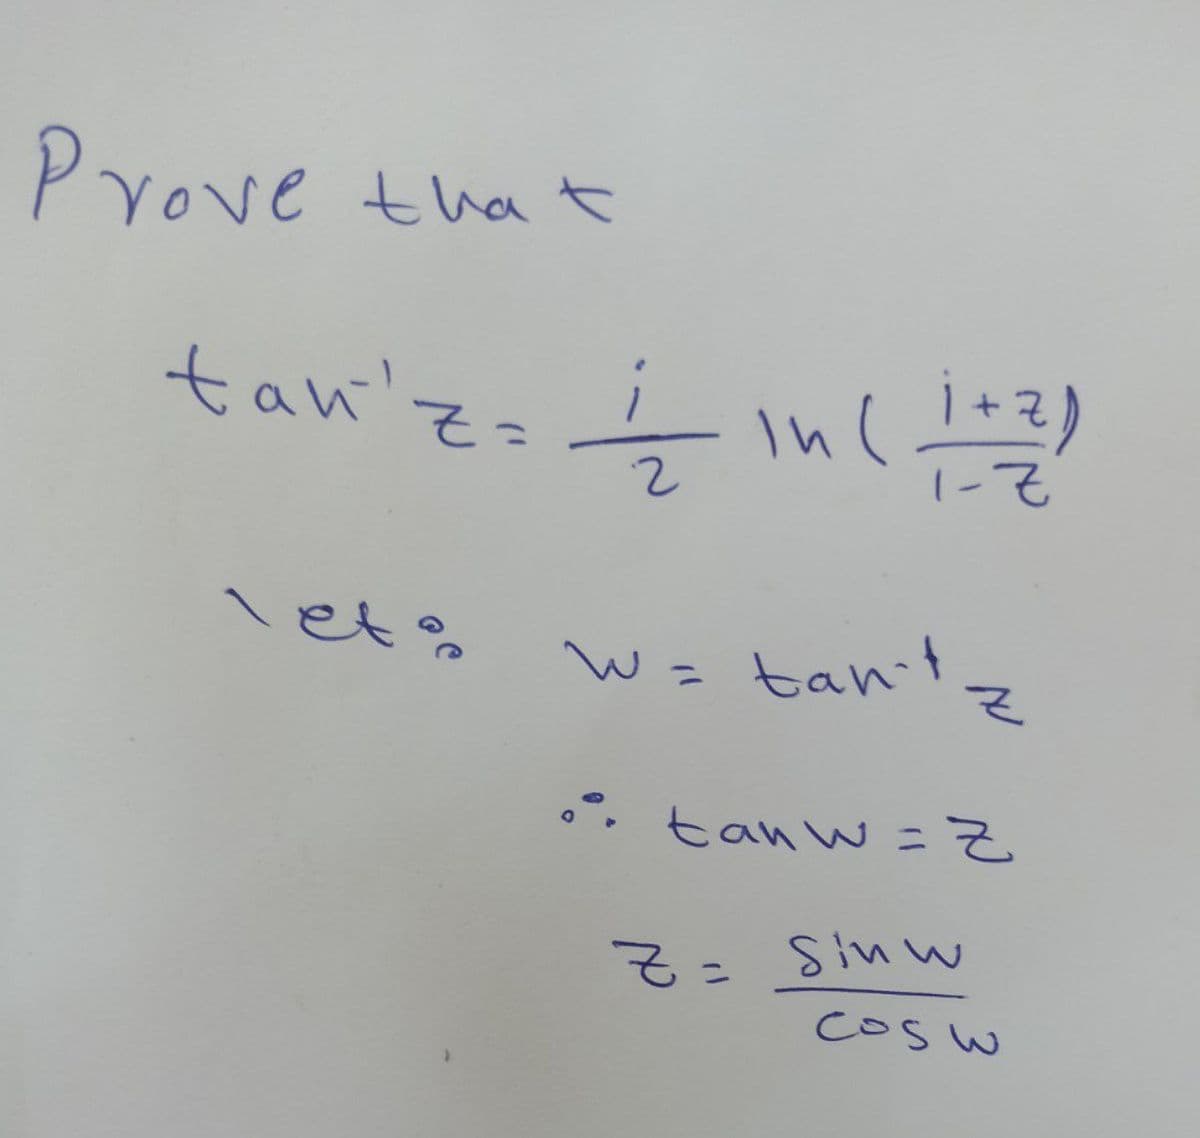 Prove that
tan'z=
1/2 in (1+2)
w = tan't z
•• tanw=Z
Z = Sinw
cosw